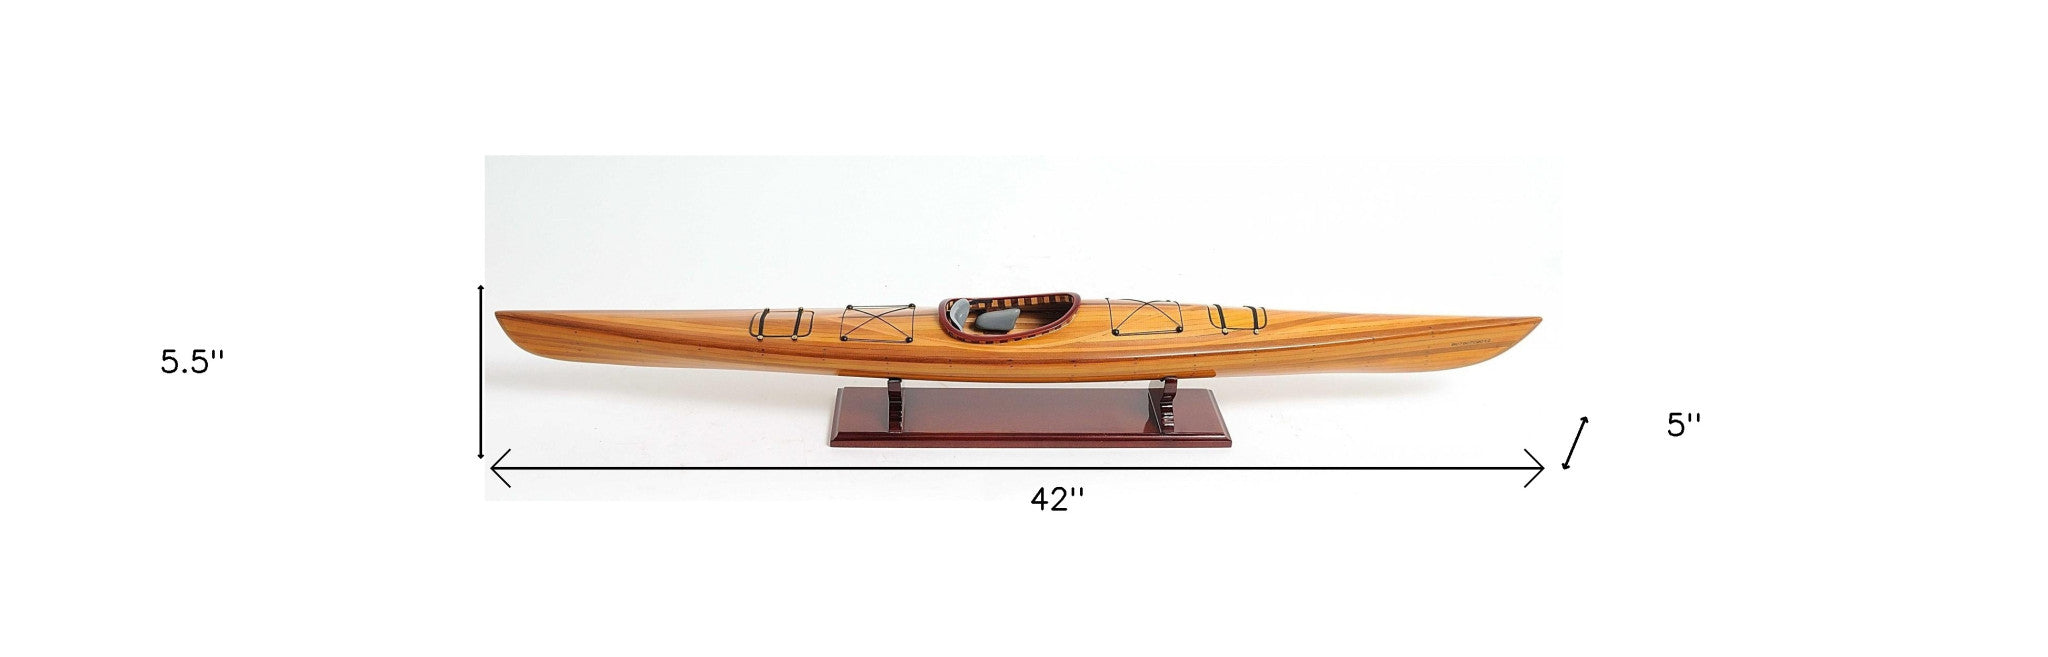 Rich Cedar Kayak Model Sculpture